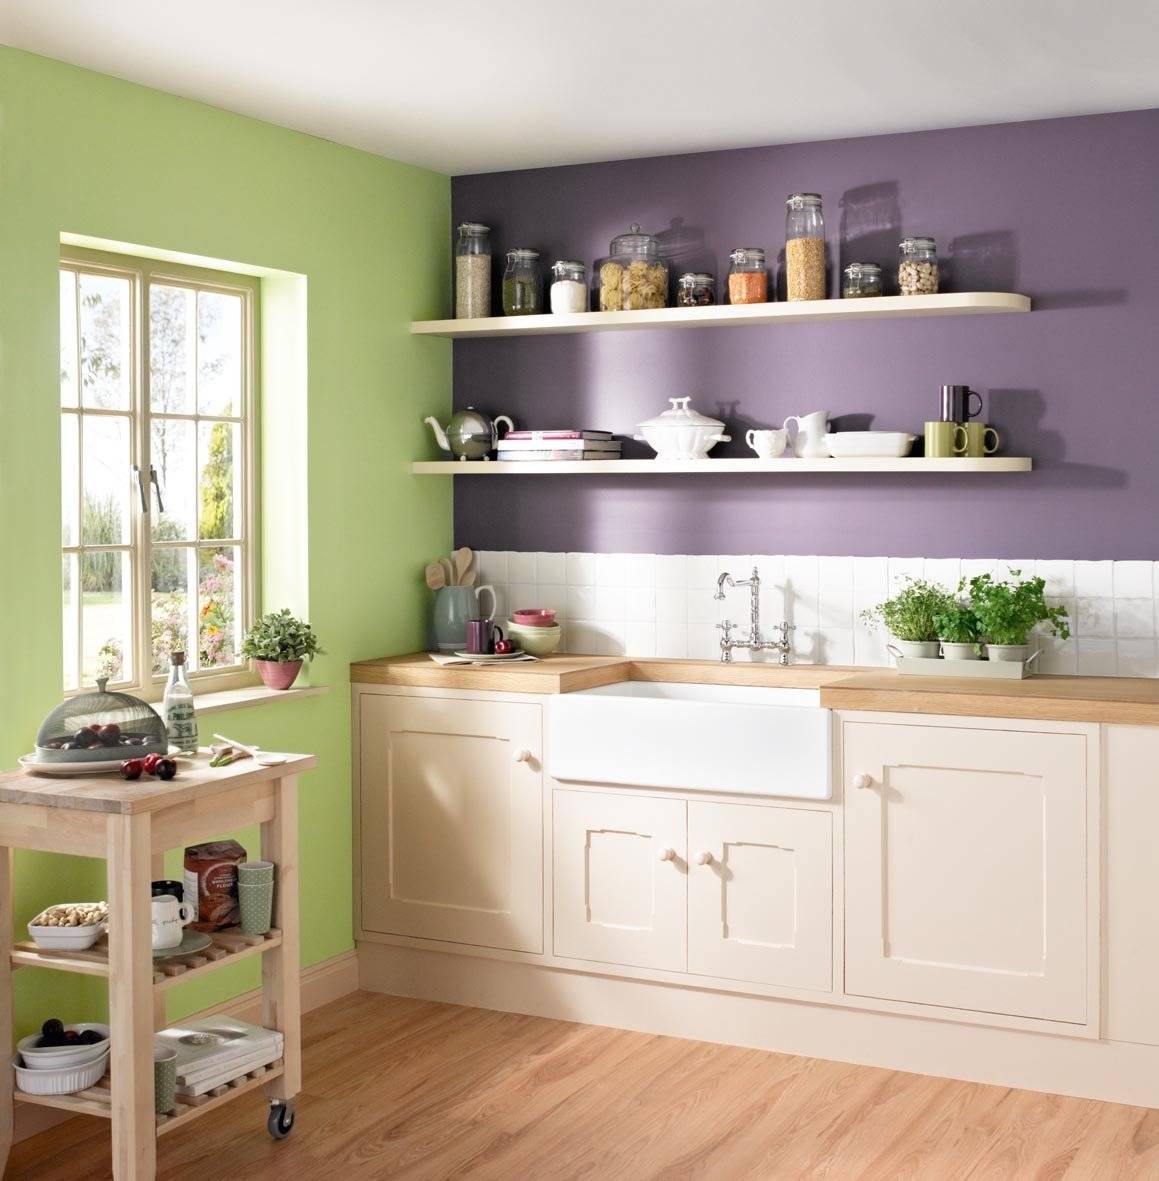 Выбор краски для стен в кухне